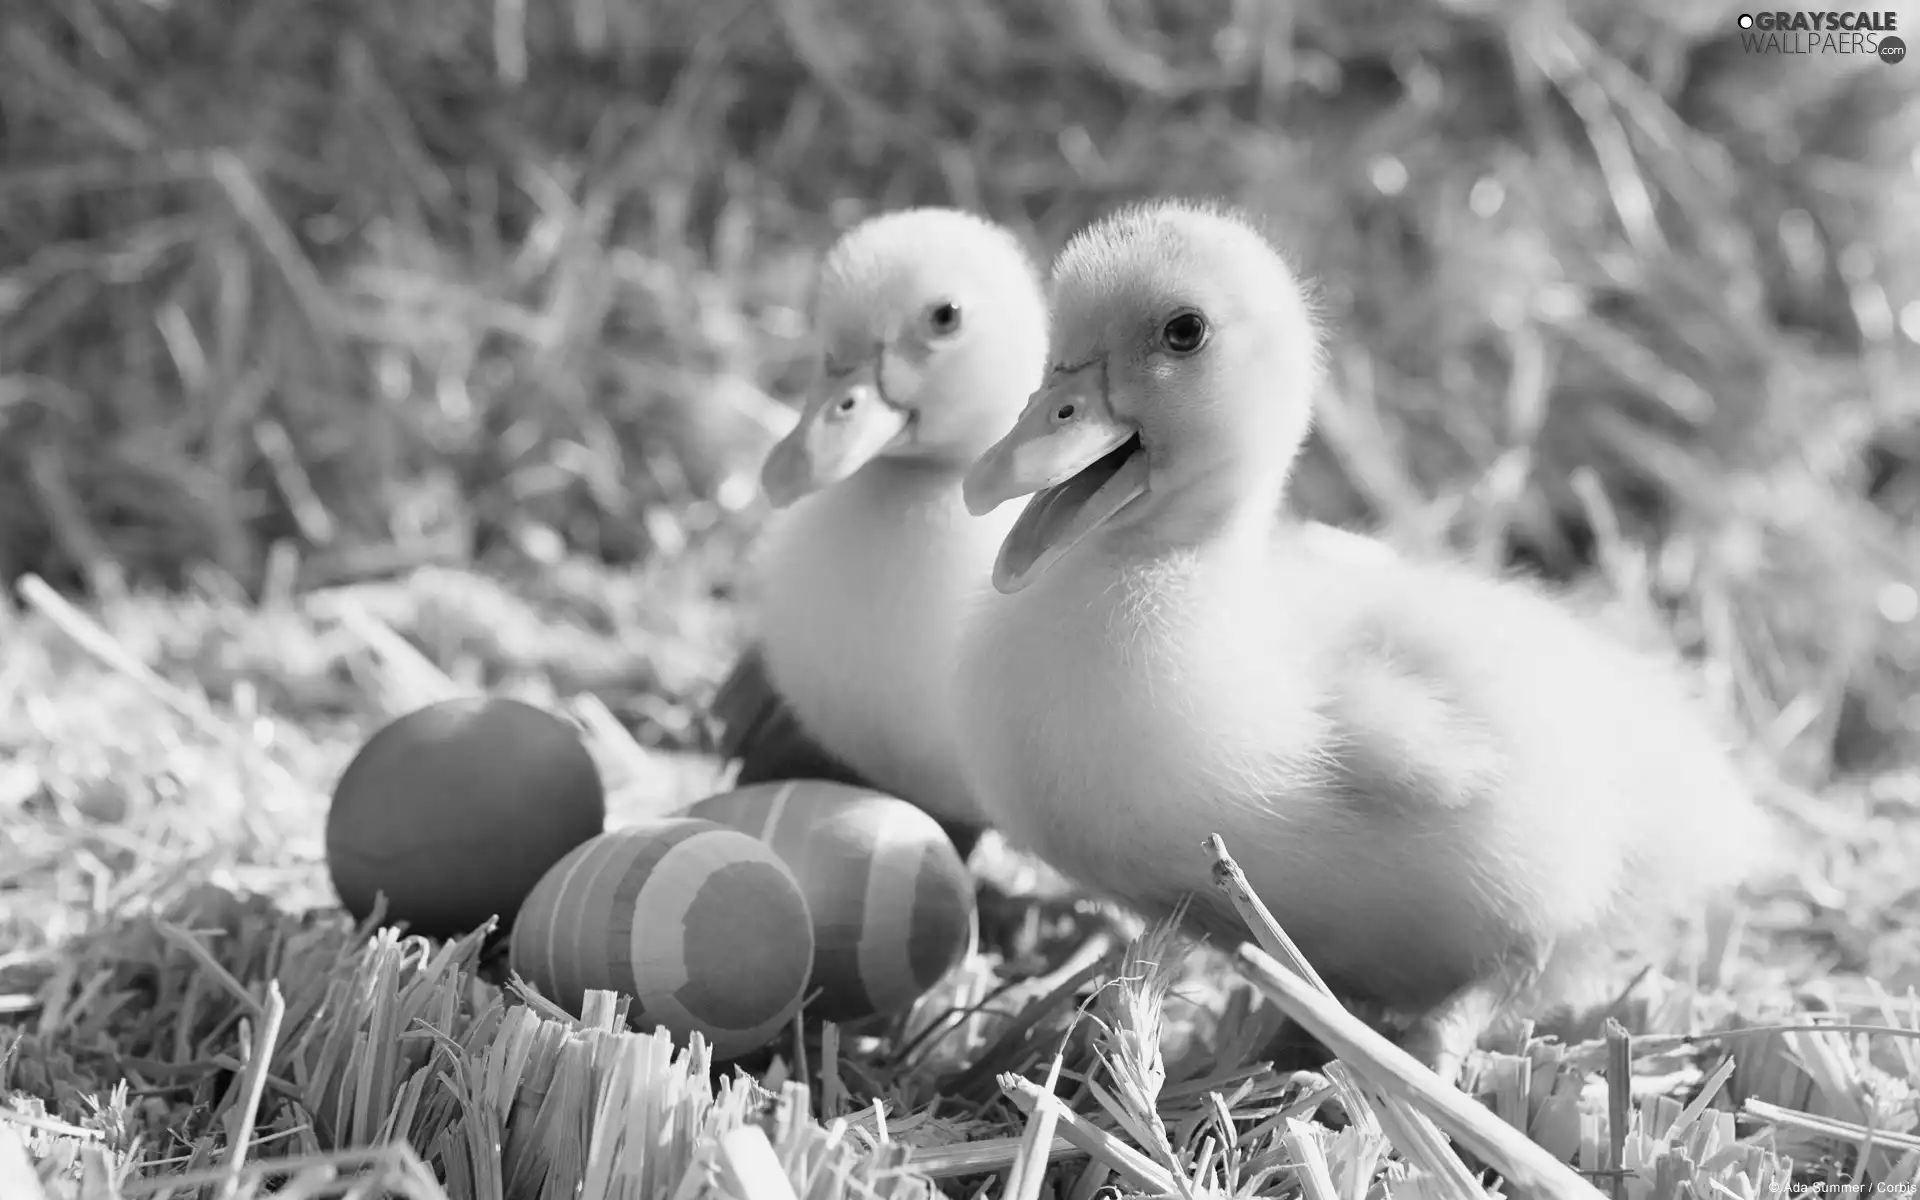 eggs, ducks